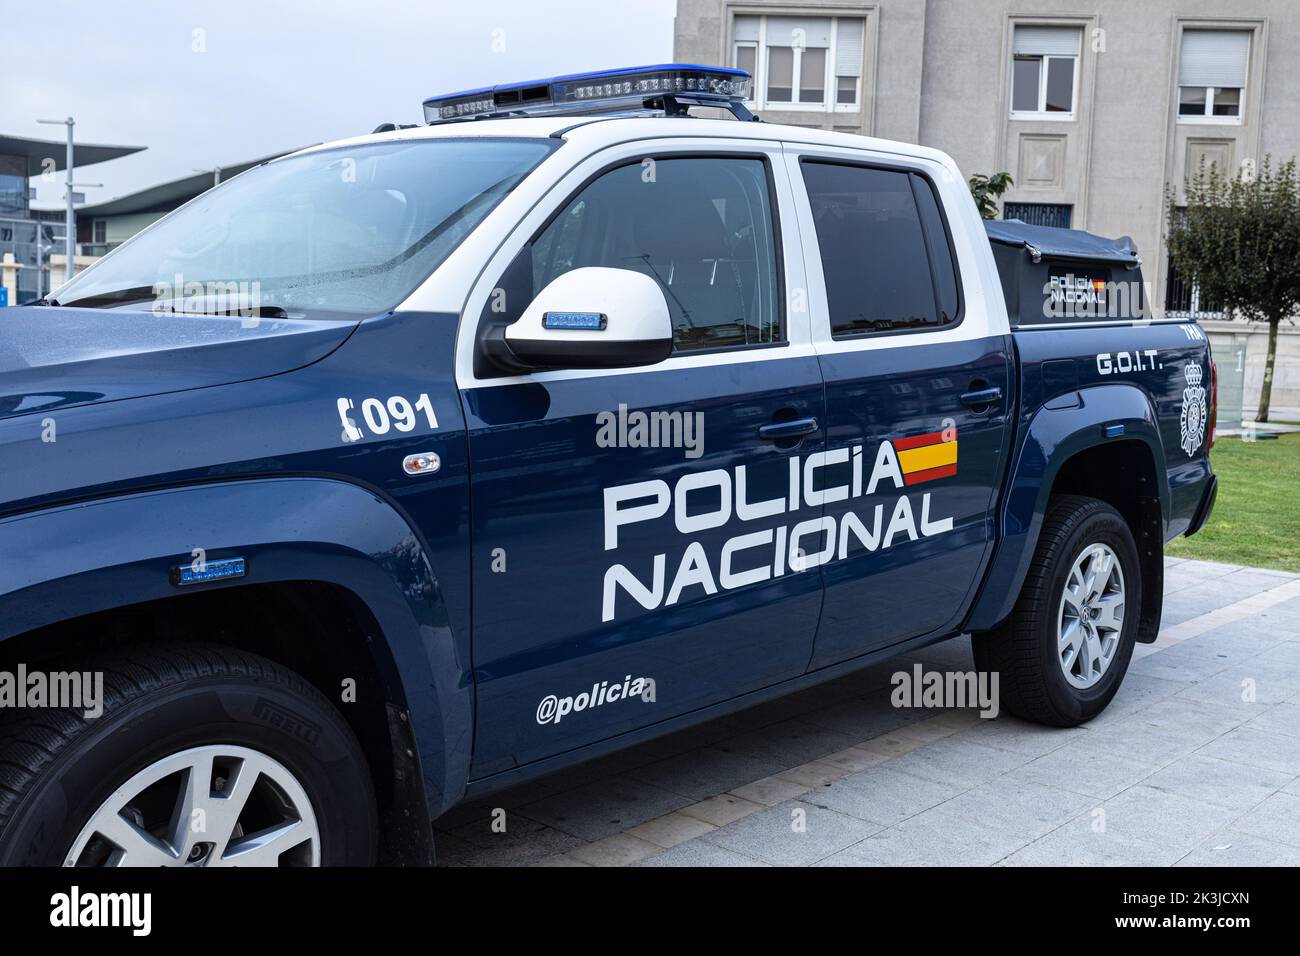 La Coruna, Spanien; 23. september 2022: Policia Nacional auf der Seite des Fahrzeugs des spanischen Nationalen Polizeikorps. Policia nacional ist die nationale civ Stockfoto